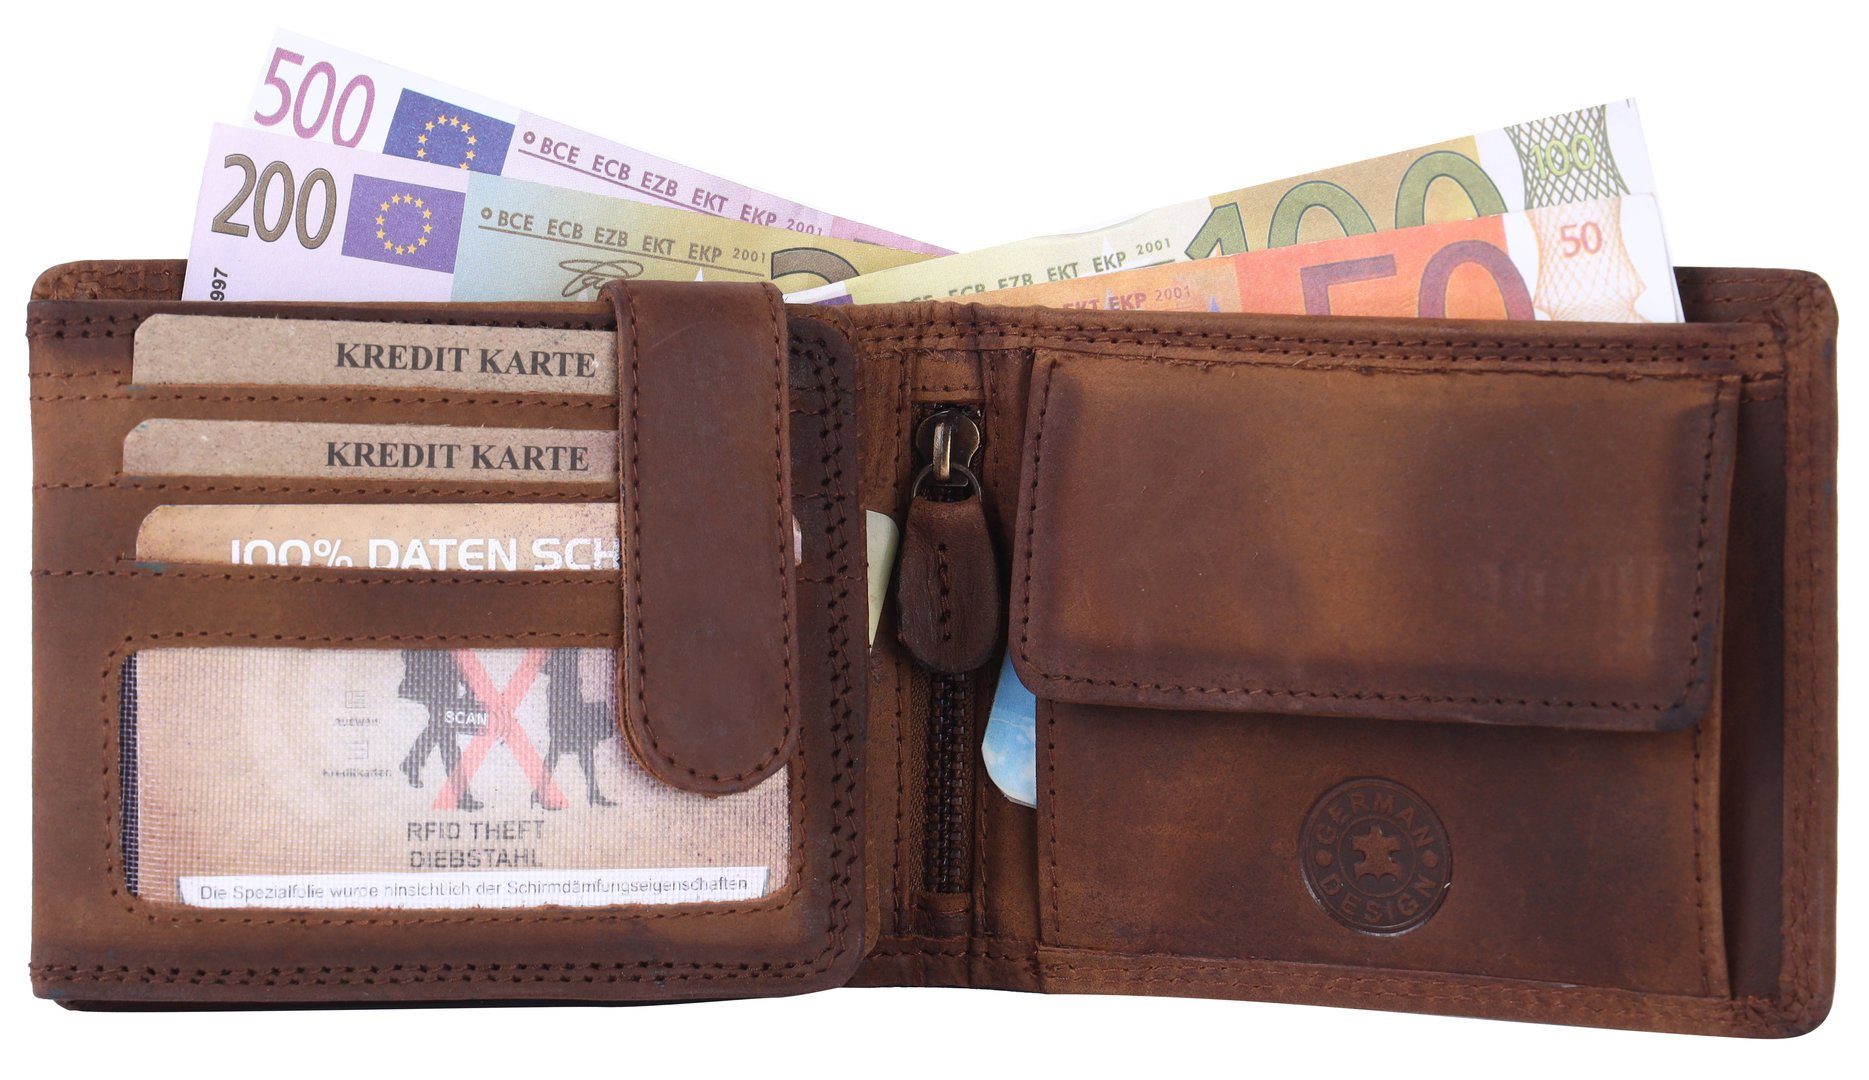 Büffelleder Lederbörse SHG Schutz mit Brieftasche Portemonnaie, RFID Börse Geldbörse Männerbörse Leder Herren Münzfach